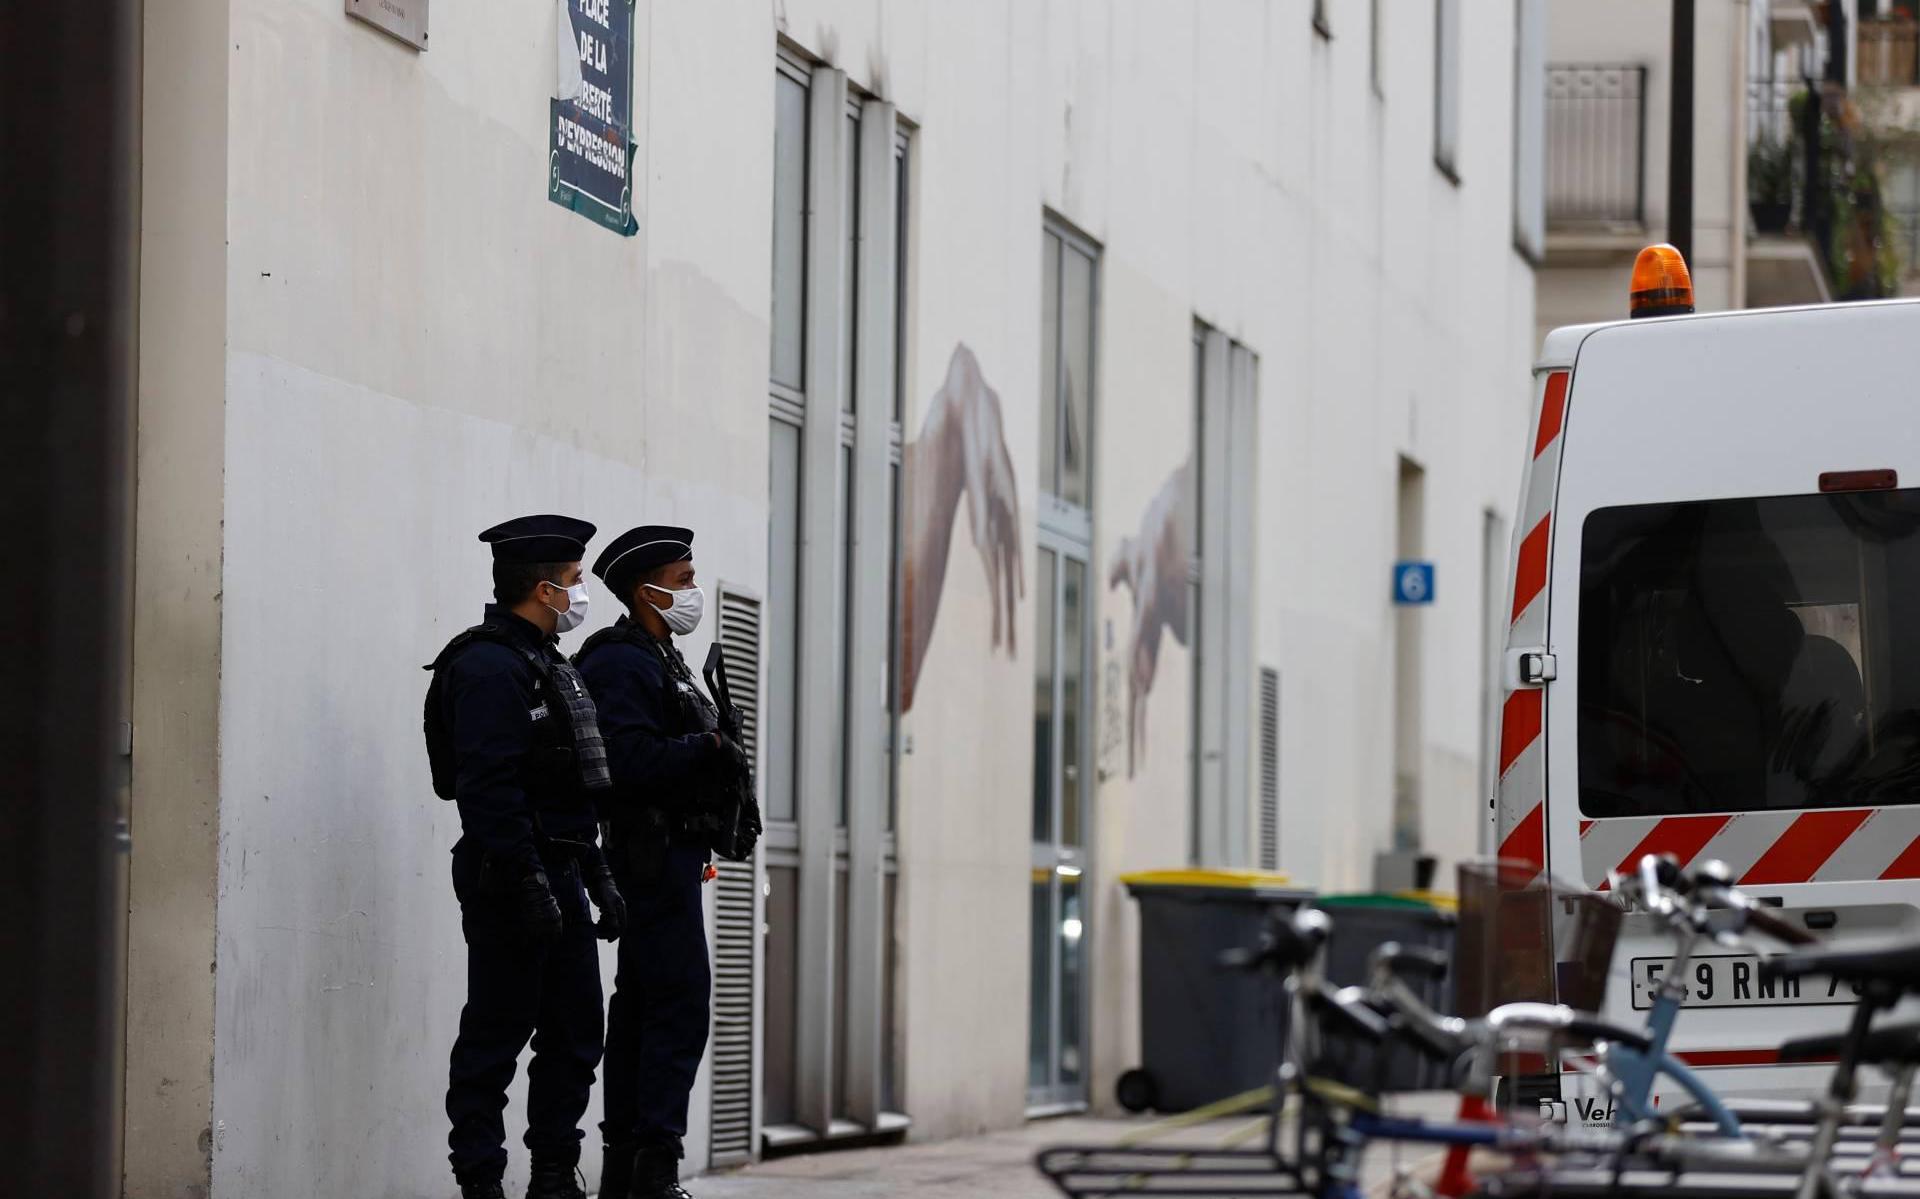 Messentrekker Parijs wilde kantoor Charlie Hebdo in brand steken